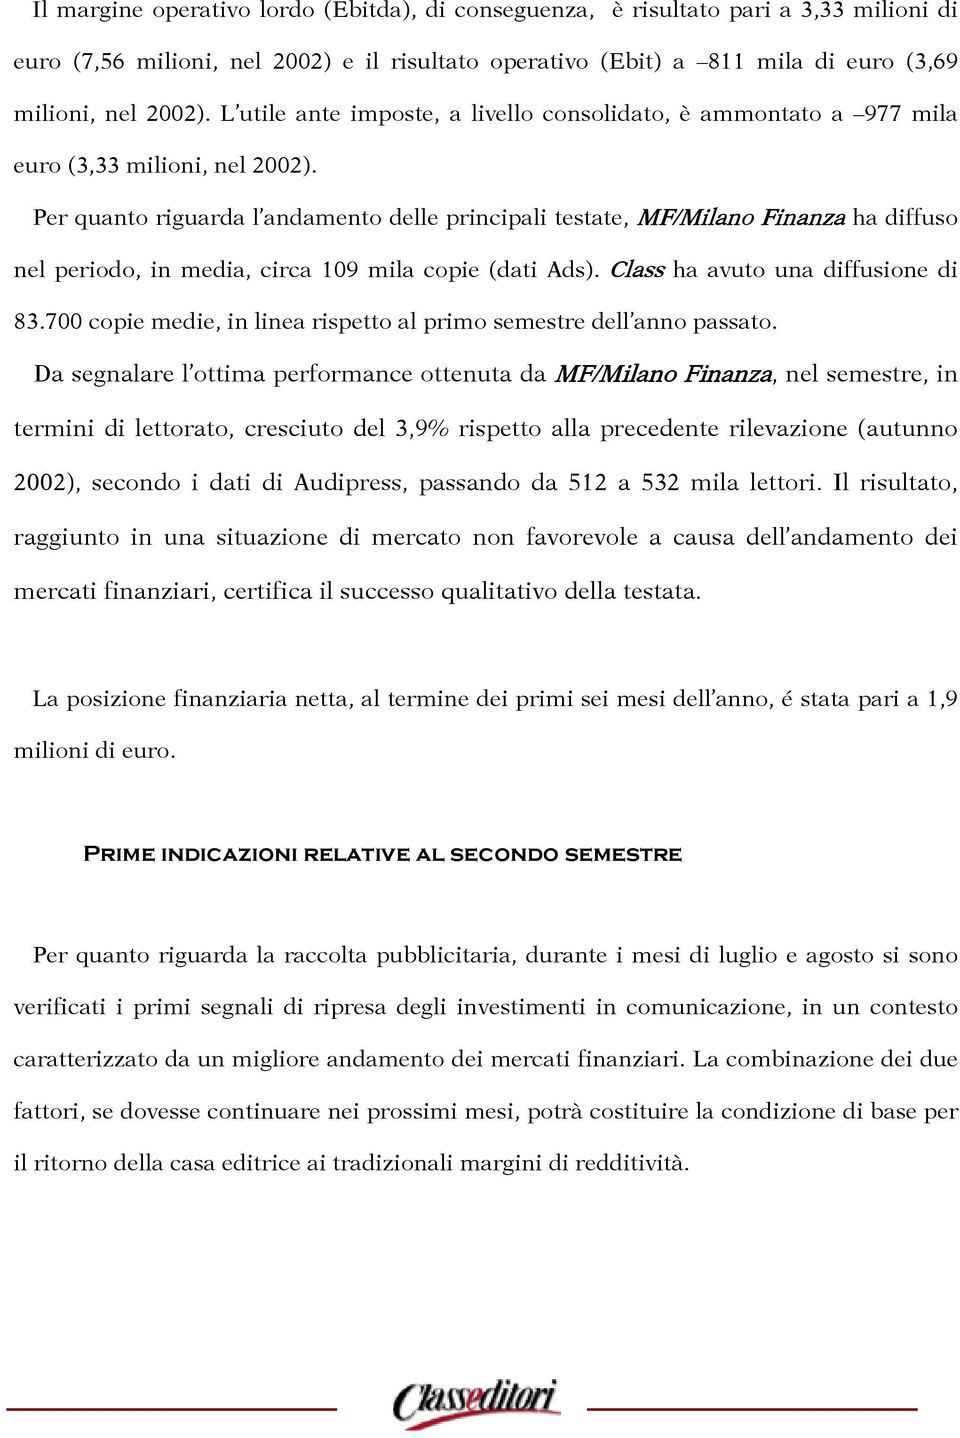 Per quanto riguarda l andamento delle principali testate, MF/Milano Finanza ha diffuso nel periodo, in media, circa 109 mila copie (dati Ads). Class ha avuto una diffusione di 83.